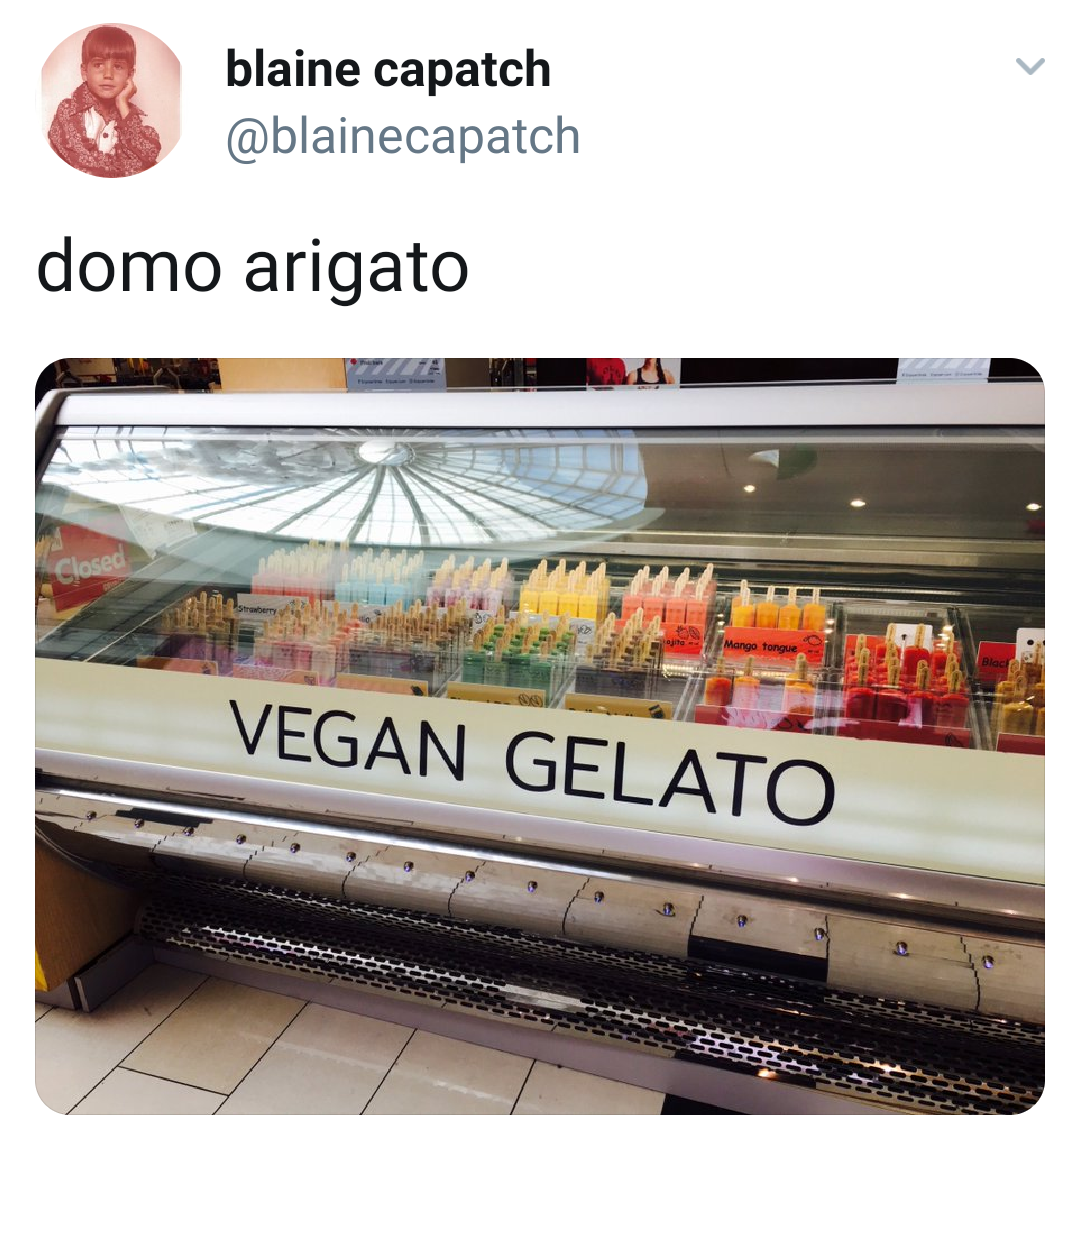 multimedia - blaine capatch domo arigato Vegan Gelato